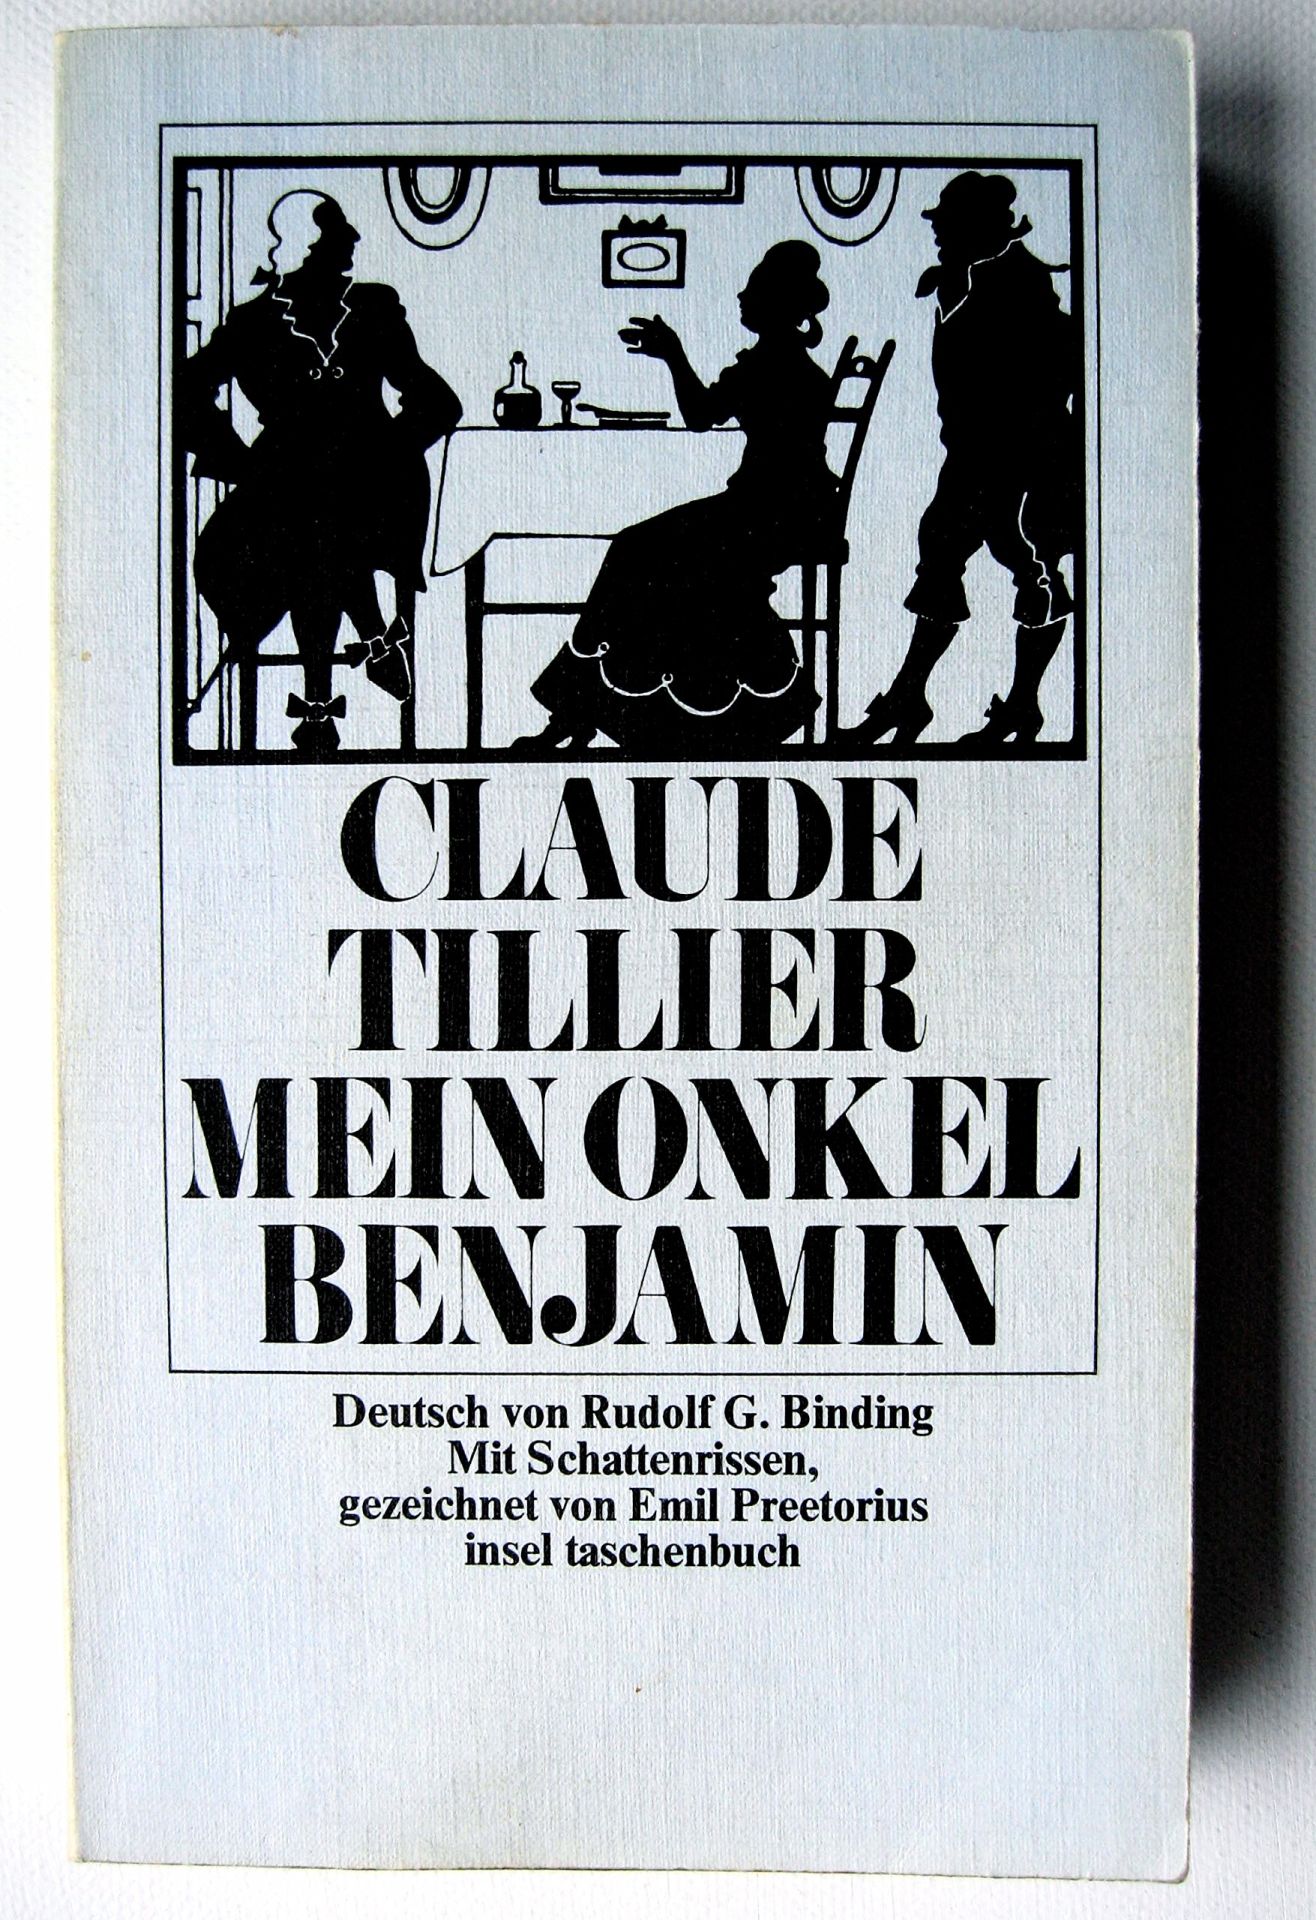 Mein Onkel Benjamin Claude Tillier. Dt. von Rudolf G. Binding. Mit Schattenrissen, gezeichnet von Emil Preetorius - Rudolf G. Binding und Claude Tillier